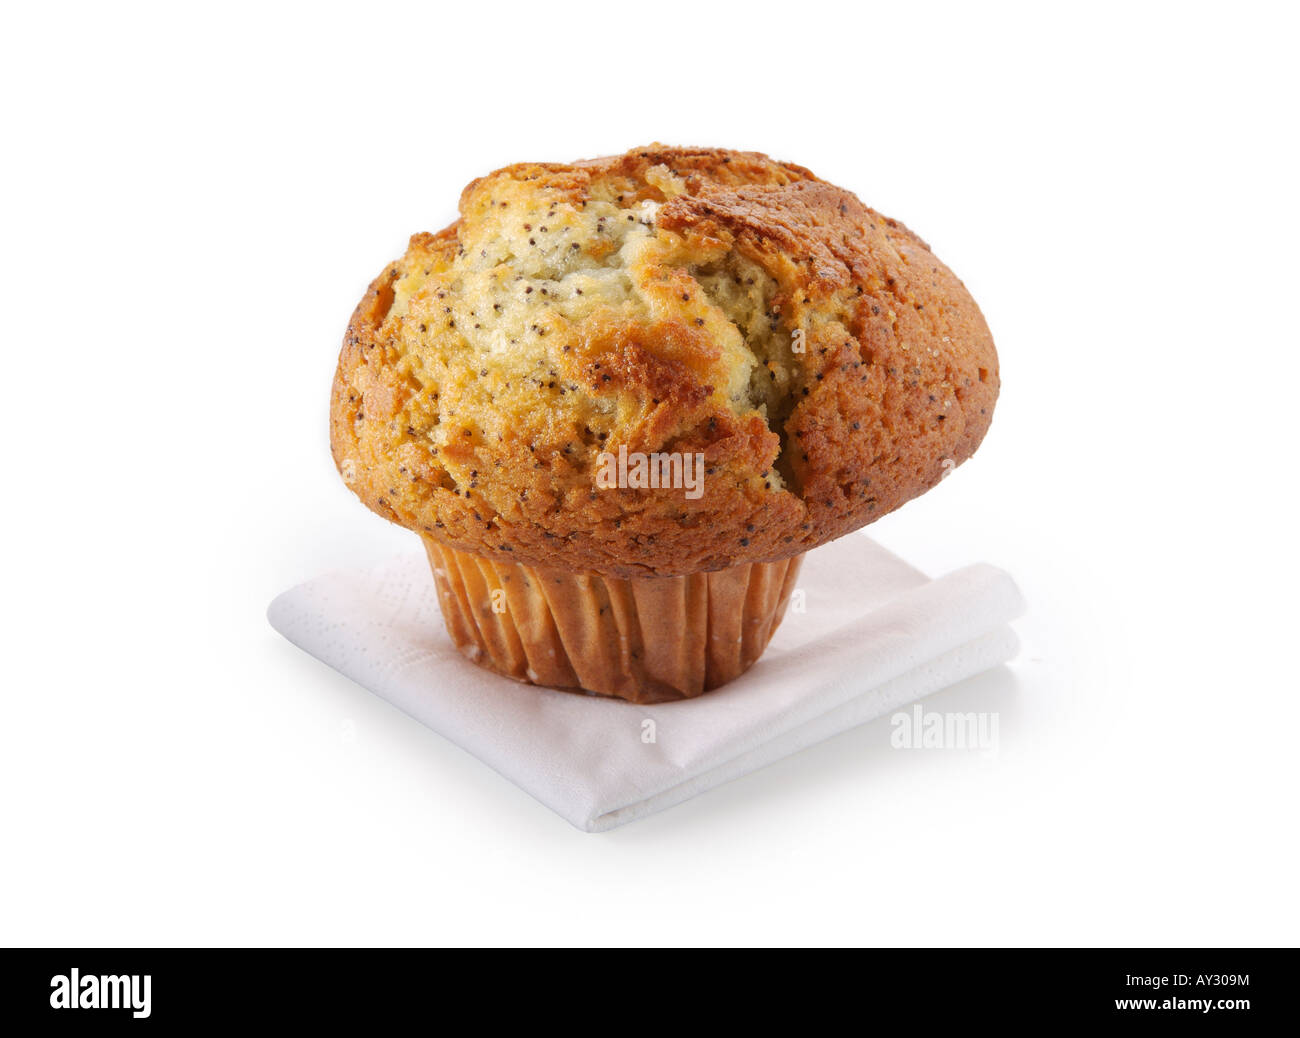 Muffin auf einer Serviette erschossen auf weiß Stockfoto